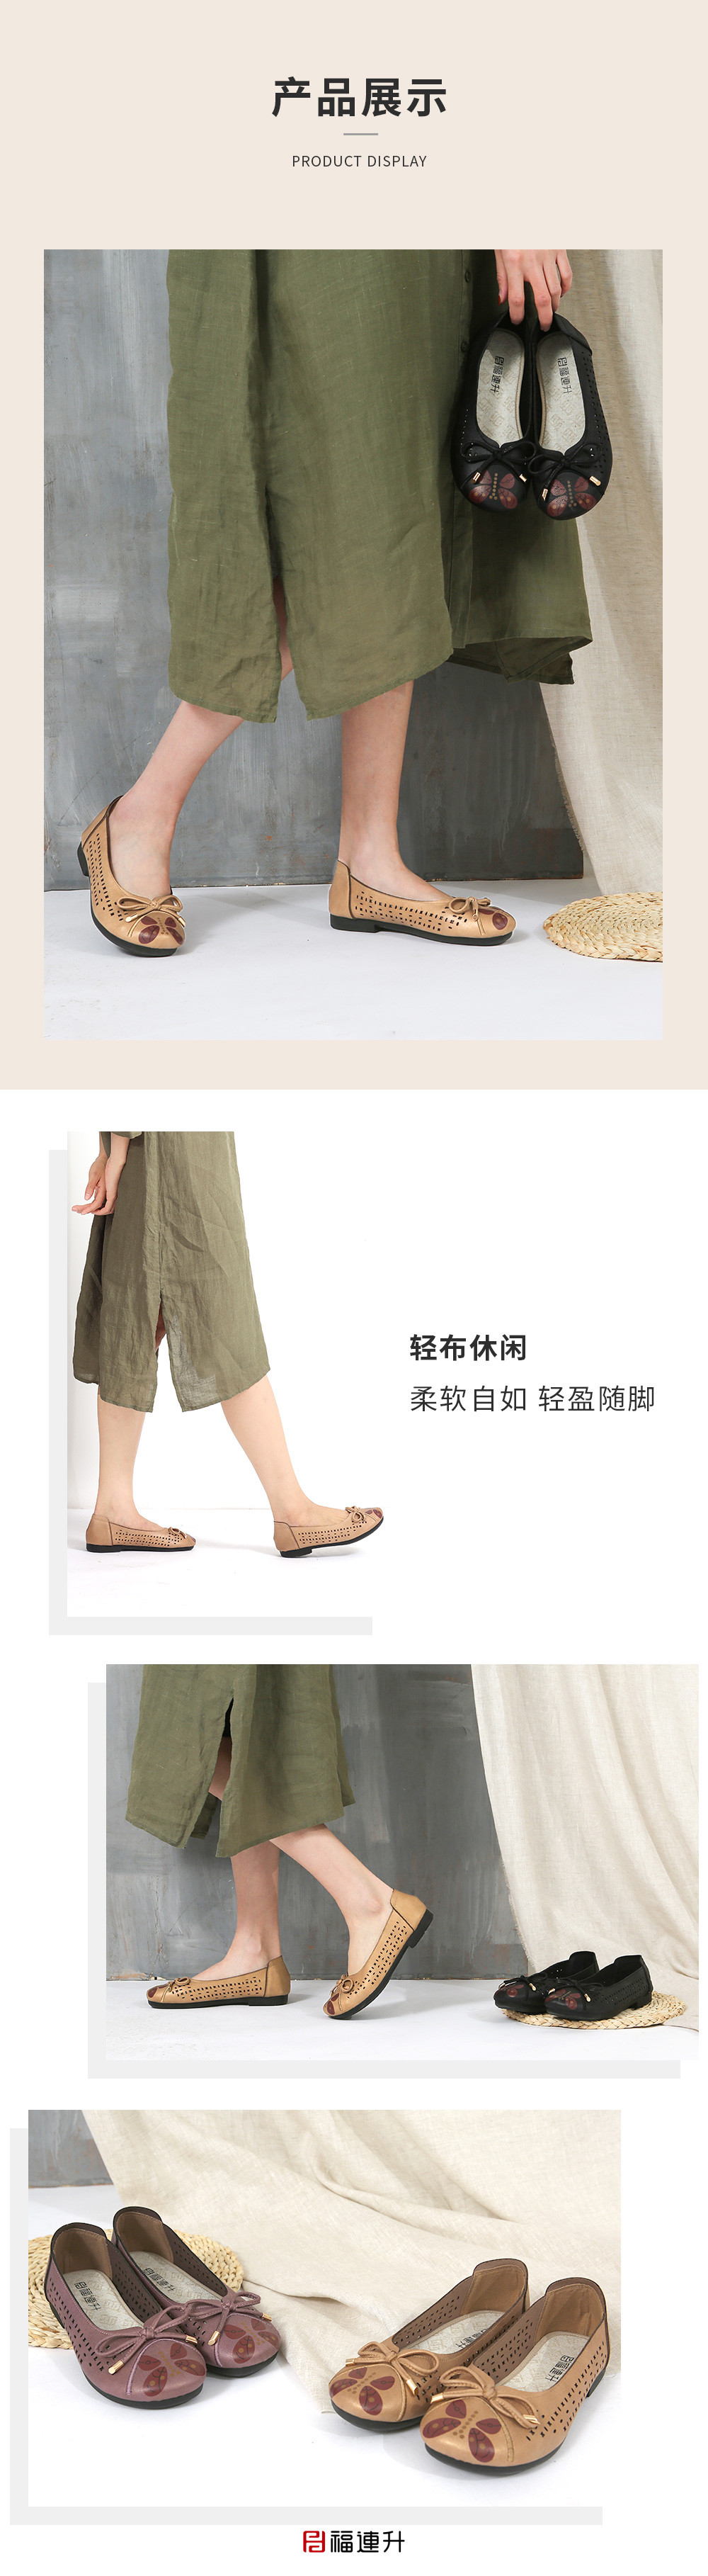 福连升夏季休闲舒适女鞋 镂空平跟软底妈妈鞋(图7)